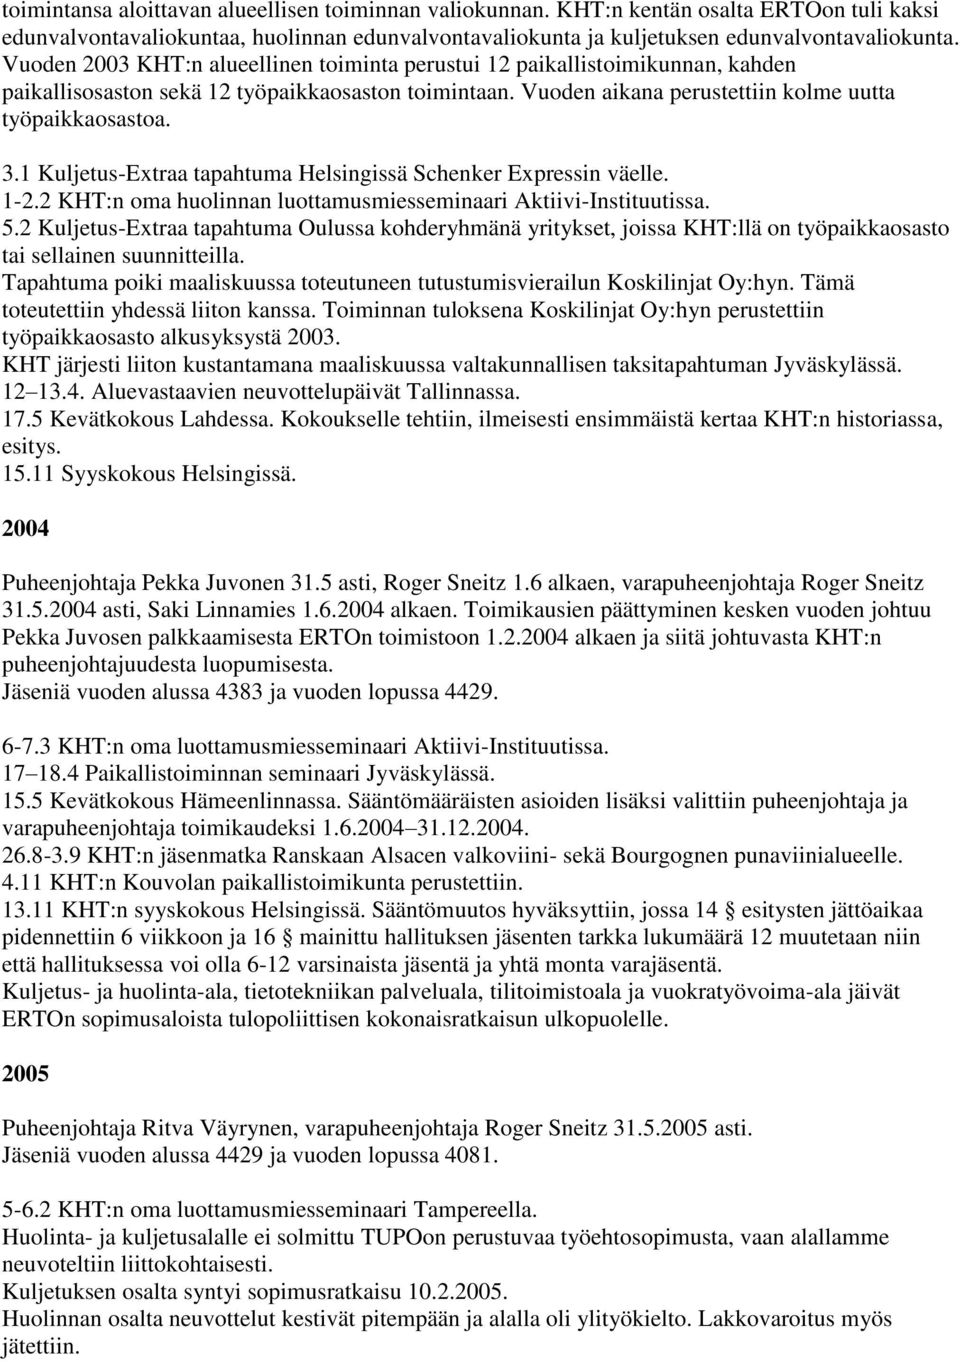 1 Kuljetus-Extraa tapahtuma Helsingissä Schenker Expressin väelle. 1-2.2 KHT:n oma huolinnan luottamusmiesseminaari Aktiivi-Instituutissa. 5.